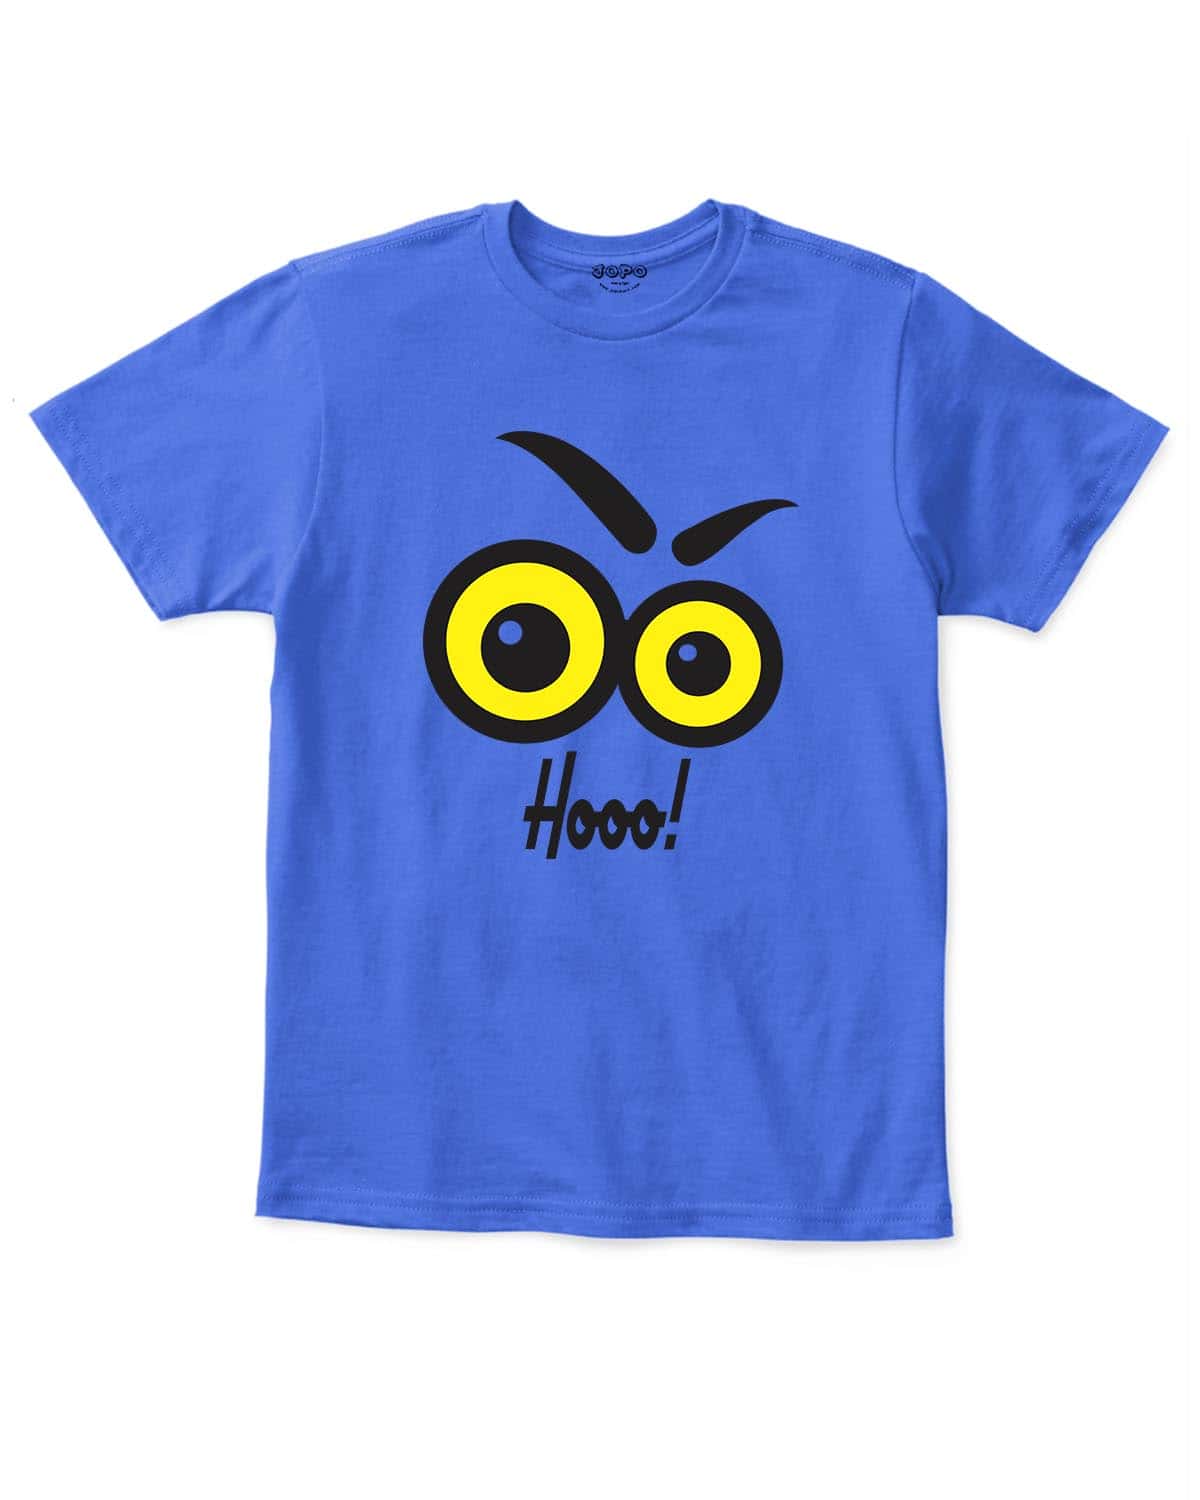 Owl Eyes Printed Kids T-Shirts